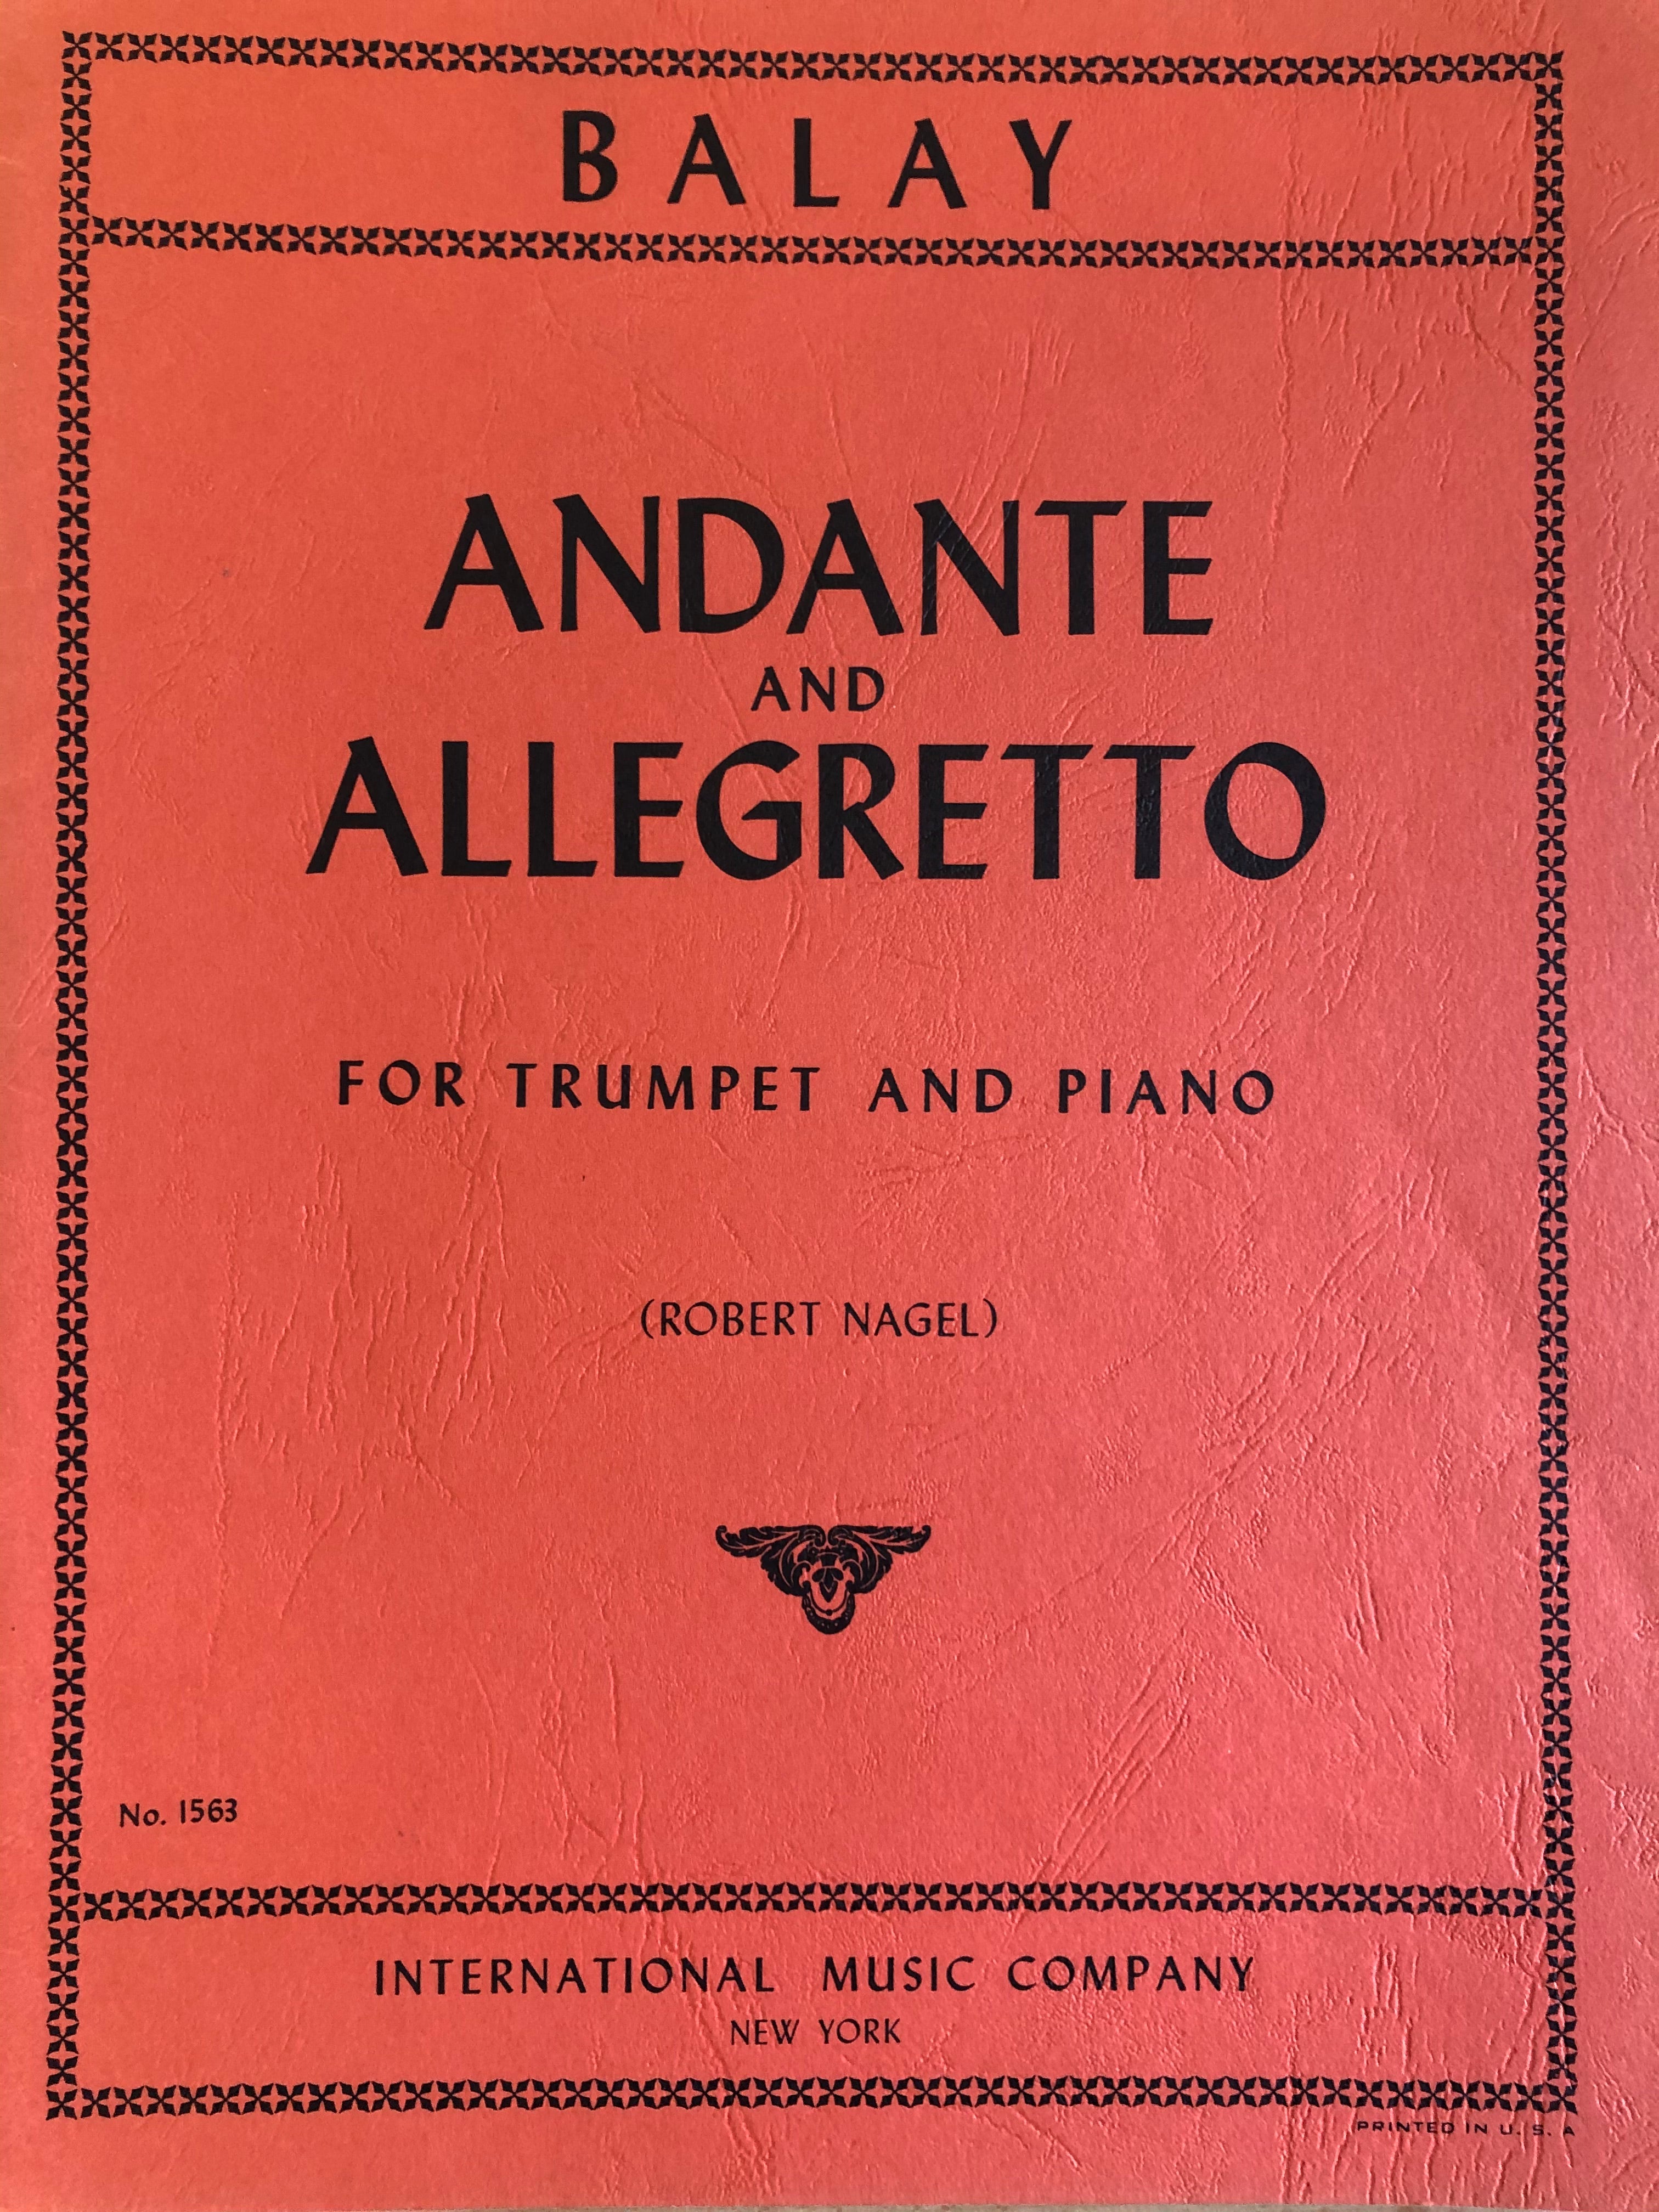 Andante and Allegretto, Trumpet and Piano, Nagel - Scattando Verkleedhuis